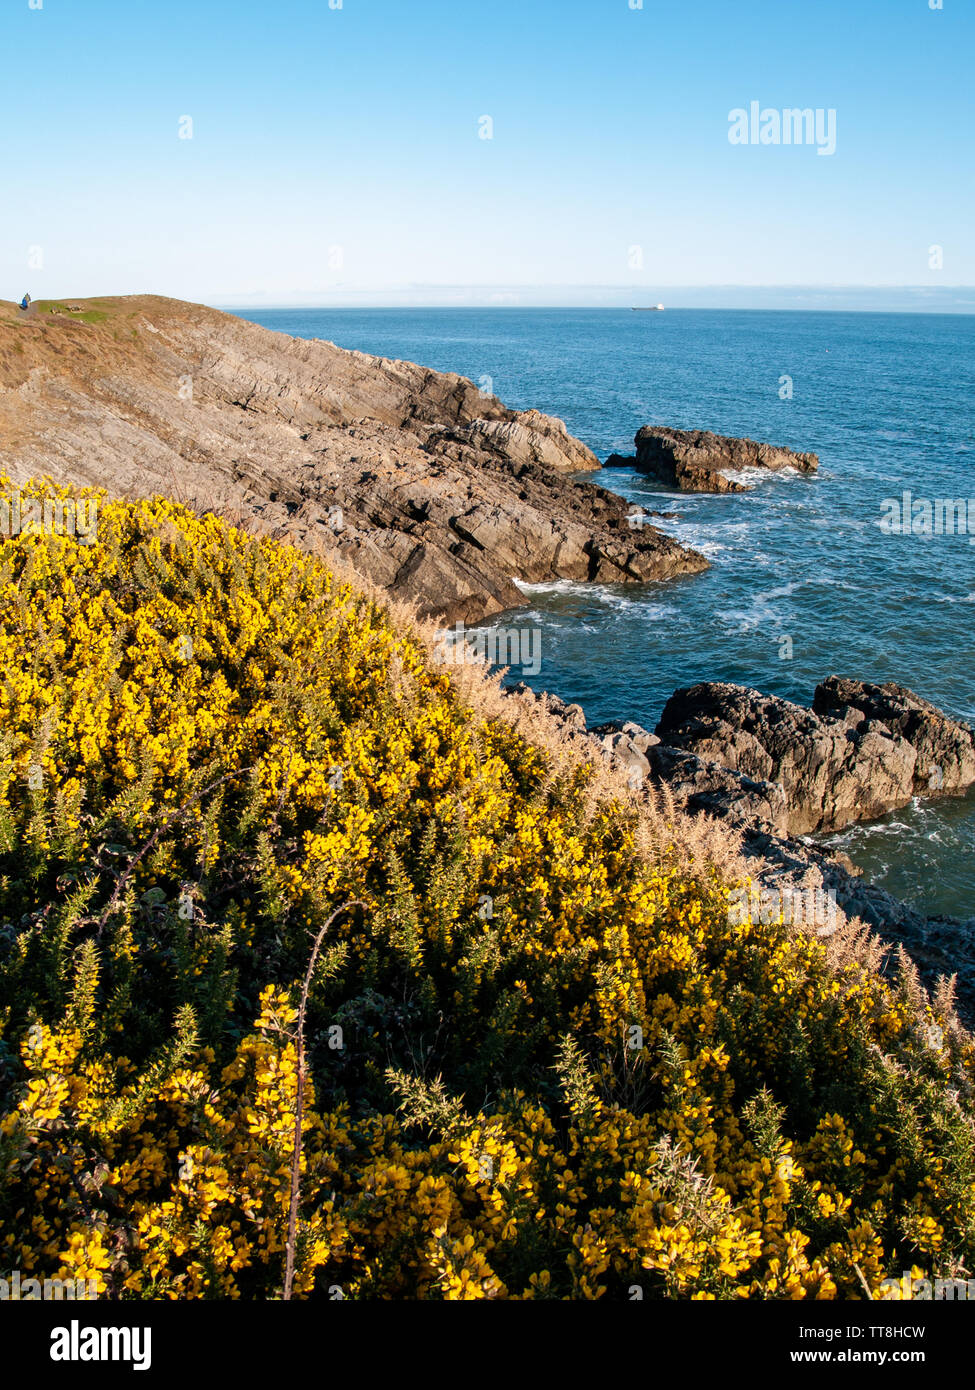 La floraison des ajoncs jaune à côté du sentier du littoral entre la baie de Langland et Caswell Bay sur Gower, Pays de Galles, Royaume-Uni Banque D'Images